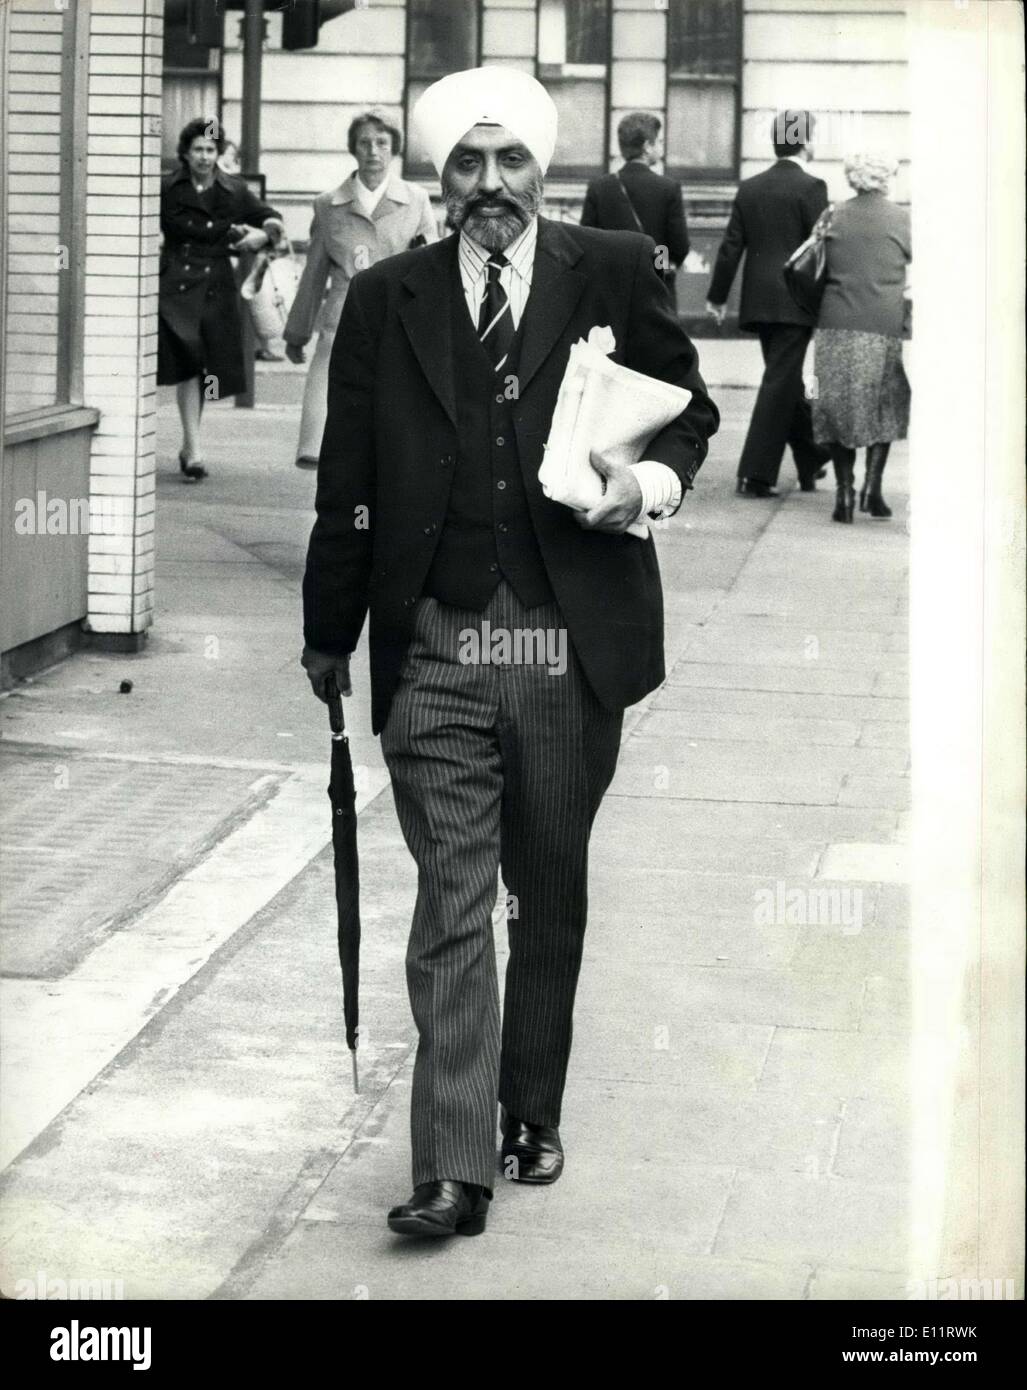 16. Oktober 1979 - Großbritanniens erster Sikh Richter Herr Recorder Mota Singh, hat QC nur als Großbritanniens ersten Sikh Richter-in der Tat, der erste Einwanderer aus dem neuen Commonwealth zu Fuß auf die britische Justiz Leiter vereidigt worden. Und zum ersten Mal wird ein britischer Richter einen Turban statt eine Perücke tragen. Vor 49 Jahren in Nairobi geboren, ist er Produkt der asiatischen Mittelschicht Kenias. Foto zeigt: Herr Mota Singh zu Fuß in London gestern nur wie ein Typica; Englischer Gentleman. Stockfoto